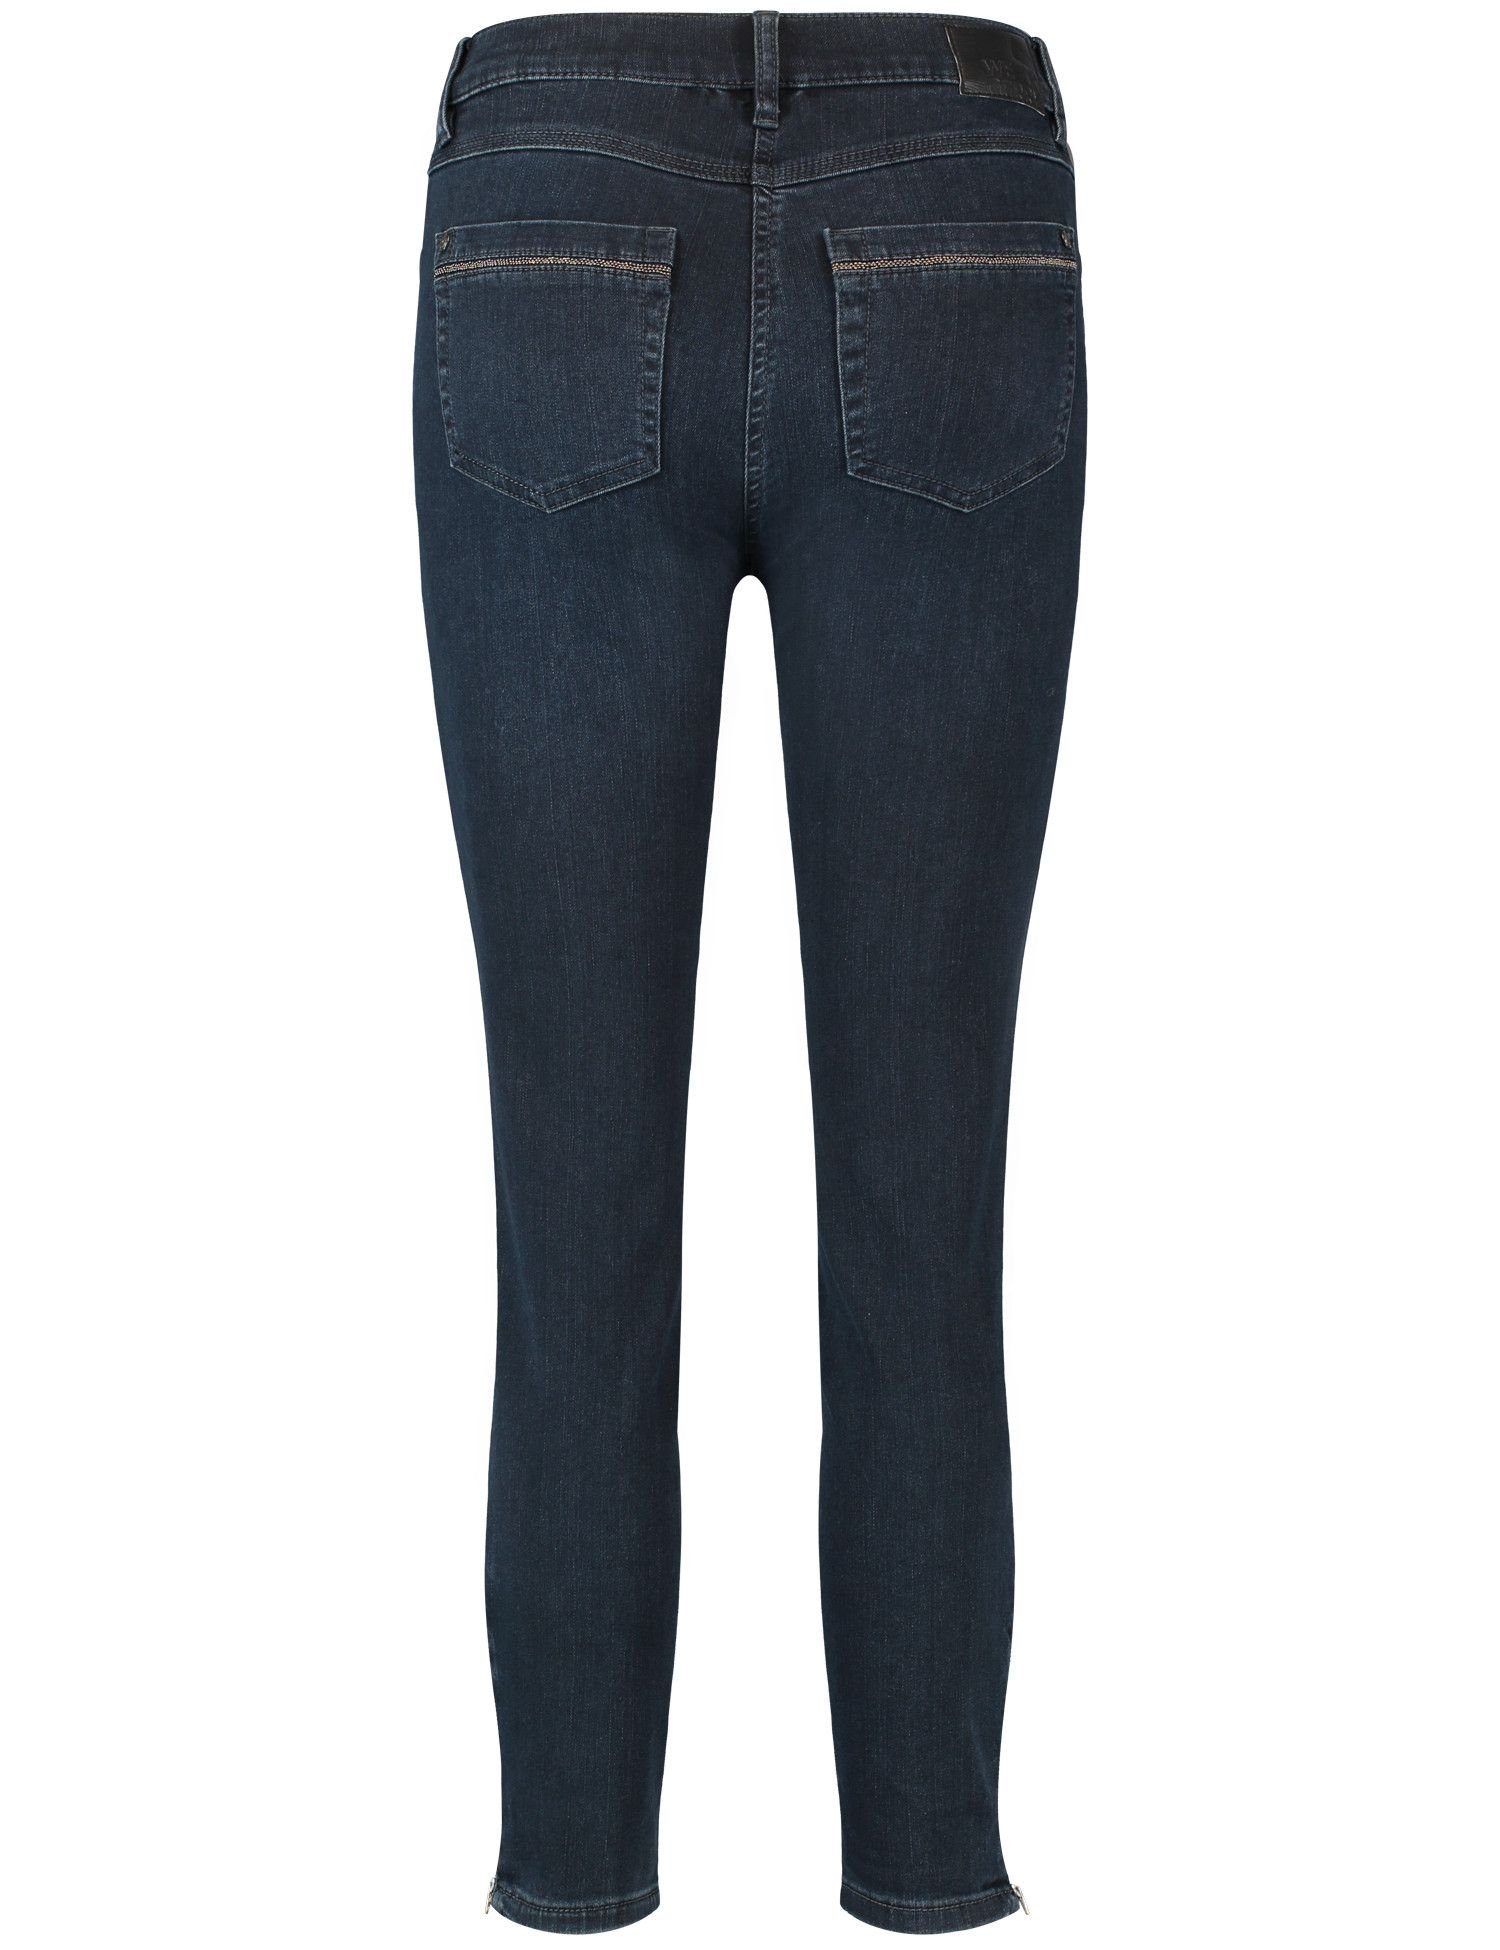 GERRY WEBER 5-Pocket-Jeans USE MIT BLUE 863003 BLACK